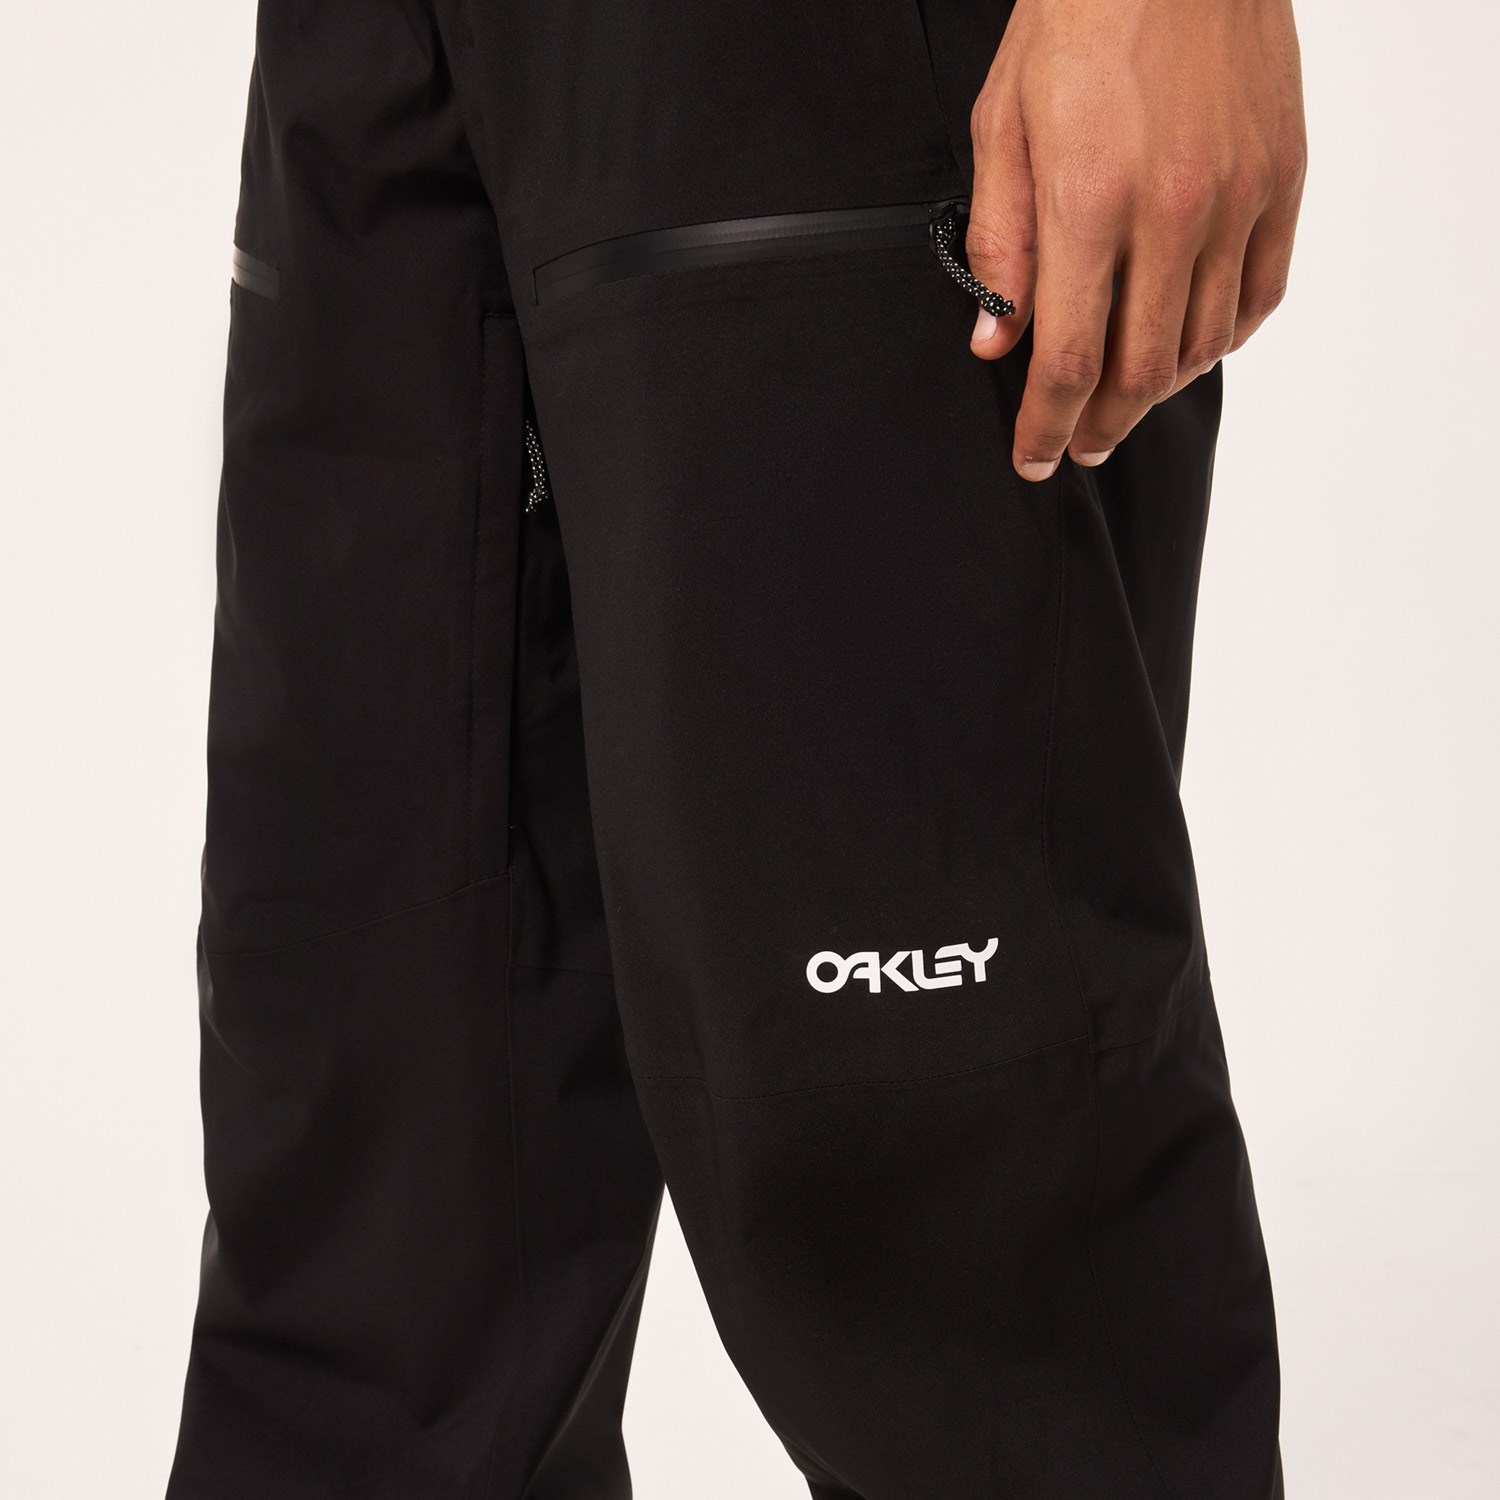 Oakley TNP Lined Shell 2.0 Pants | evo